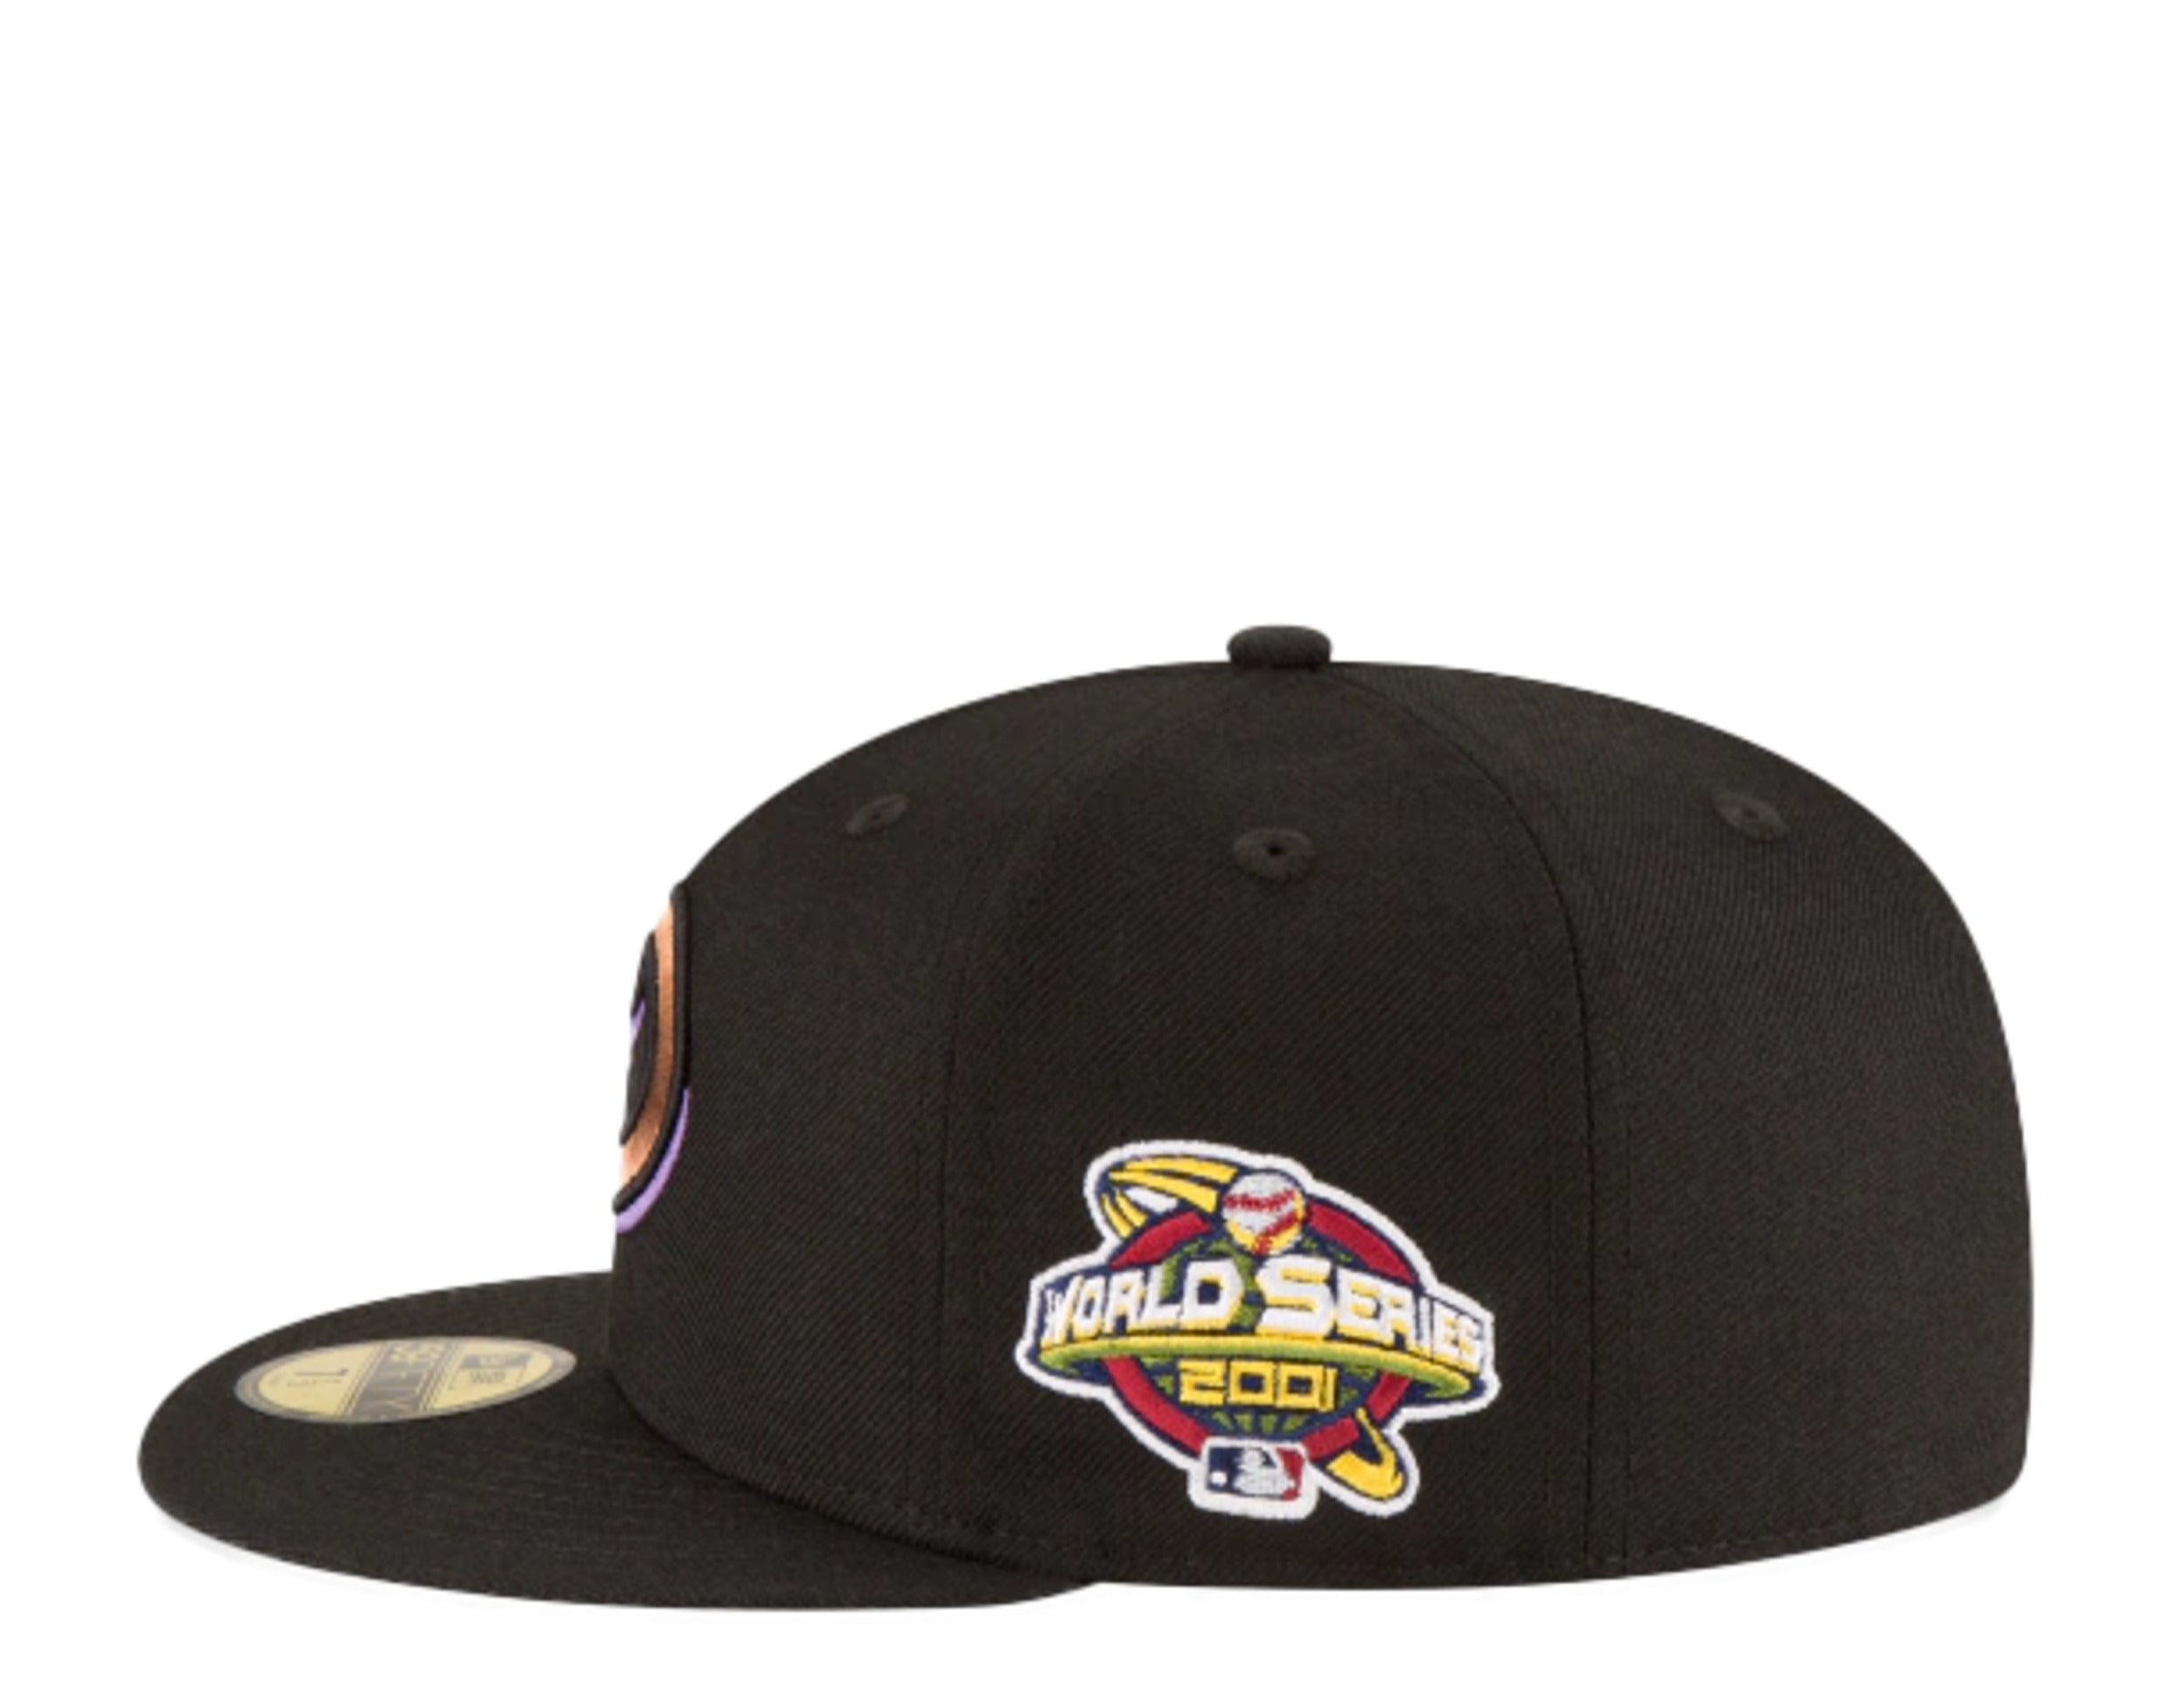 New Era Arizona Diamondbacks Fitted Hat 7 1/4 2001 World Series Patch